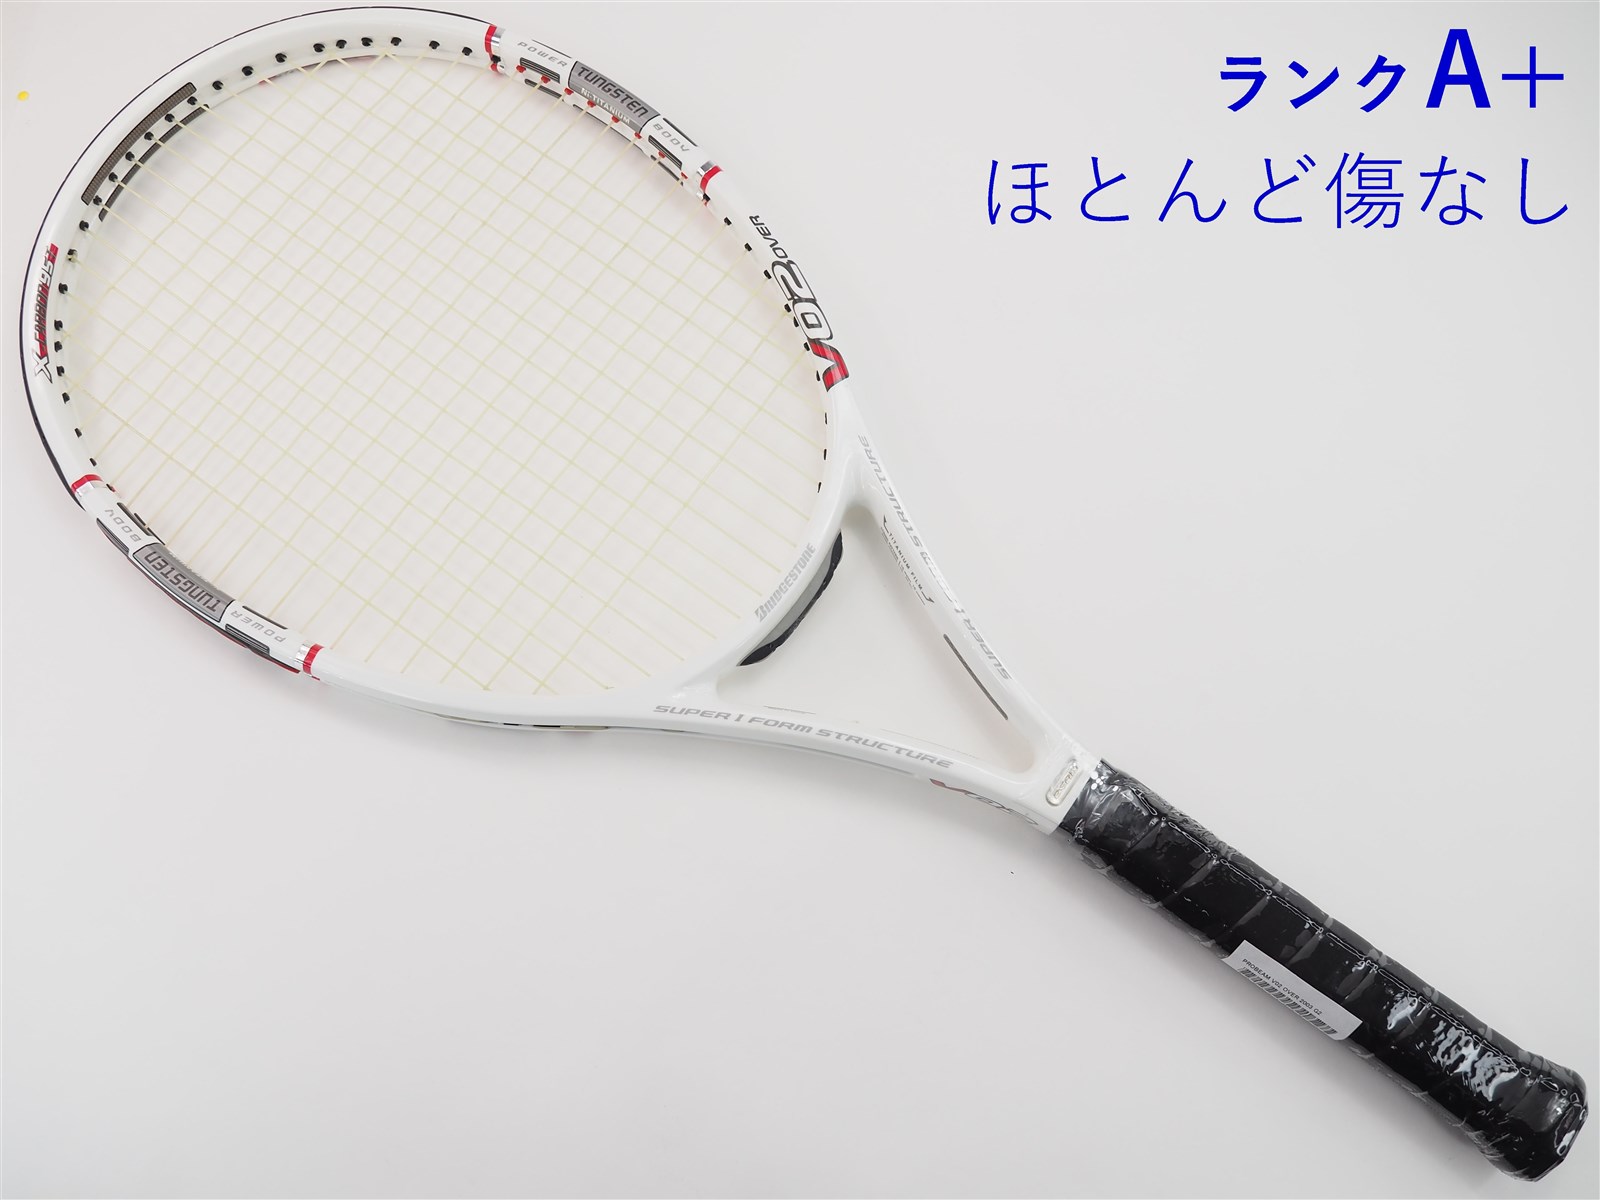 120平方インチ長さテニスラケット ブリヂストン プロビーム V-WR 2.35 2005年モデル (G2)BRIDGESTONE PROBEAM V-WR 2.35 2005